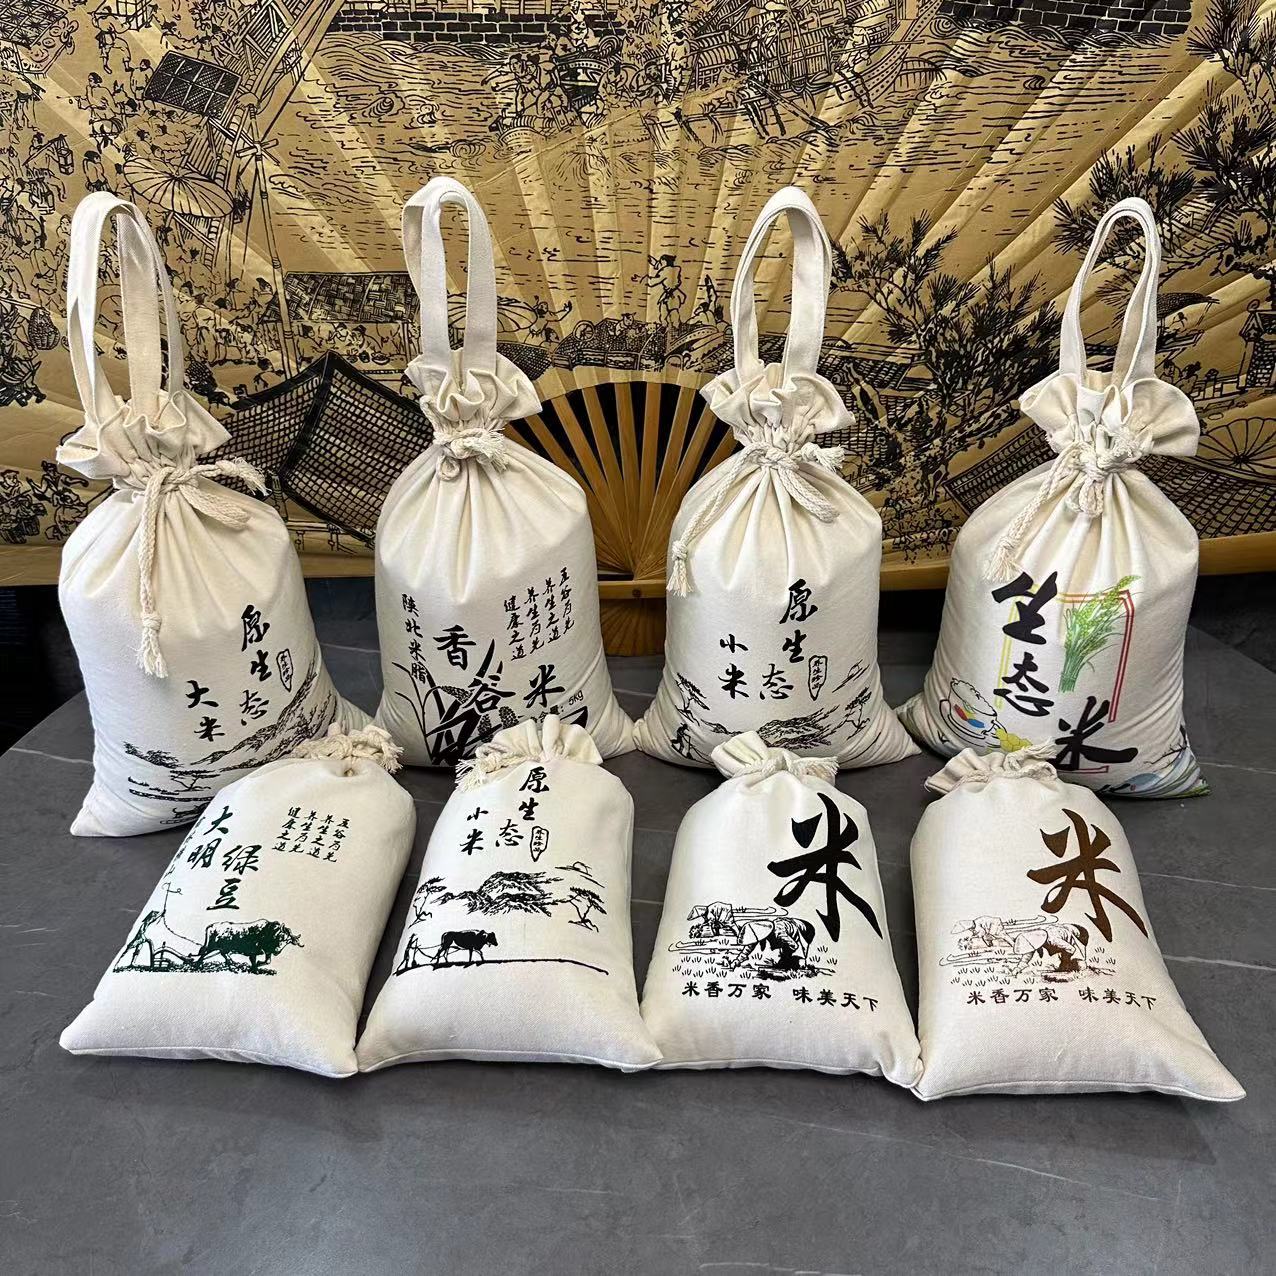 米袋子小米包装袋大米布袋绿豆袋子陕北香谷米手提帆布袋定制LOGO